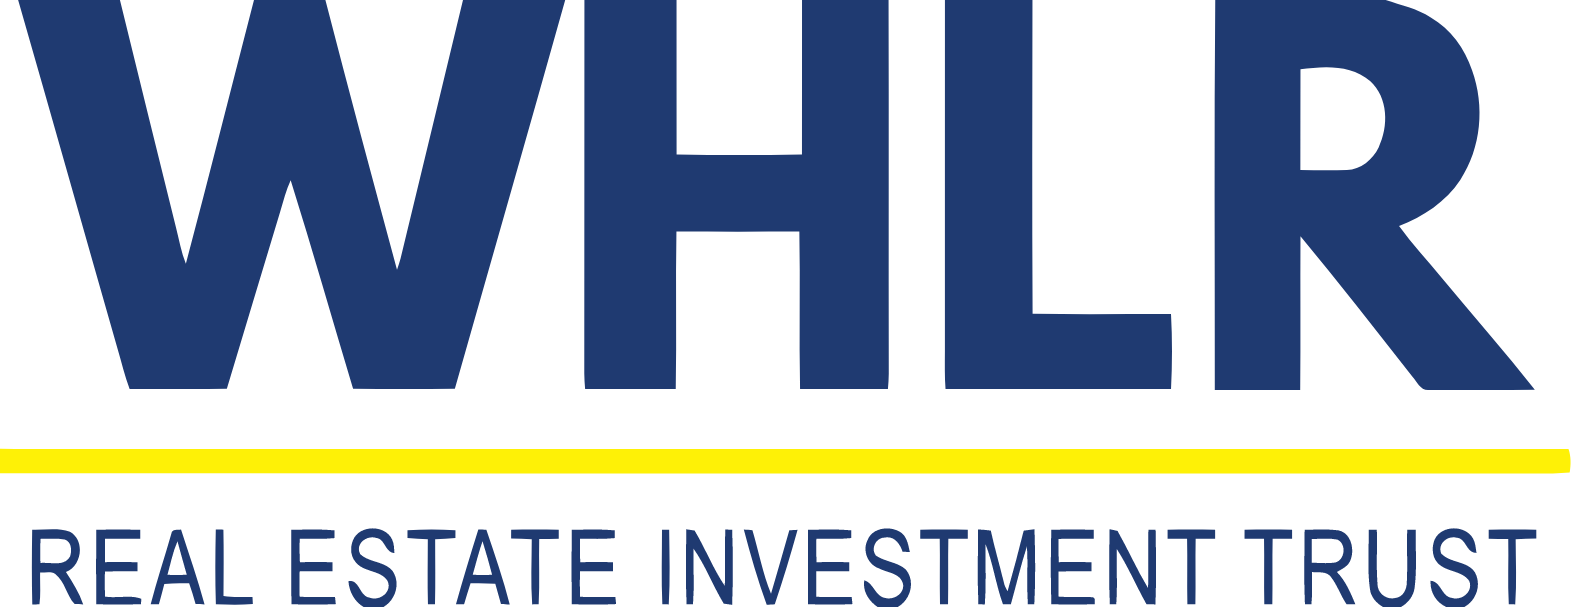 Wheeler Real Estate Investment Trust logo large (transparent PNG)